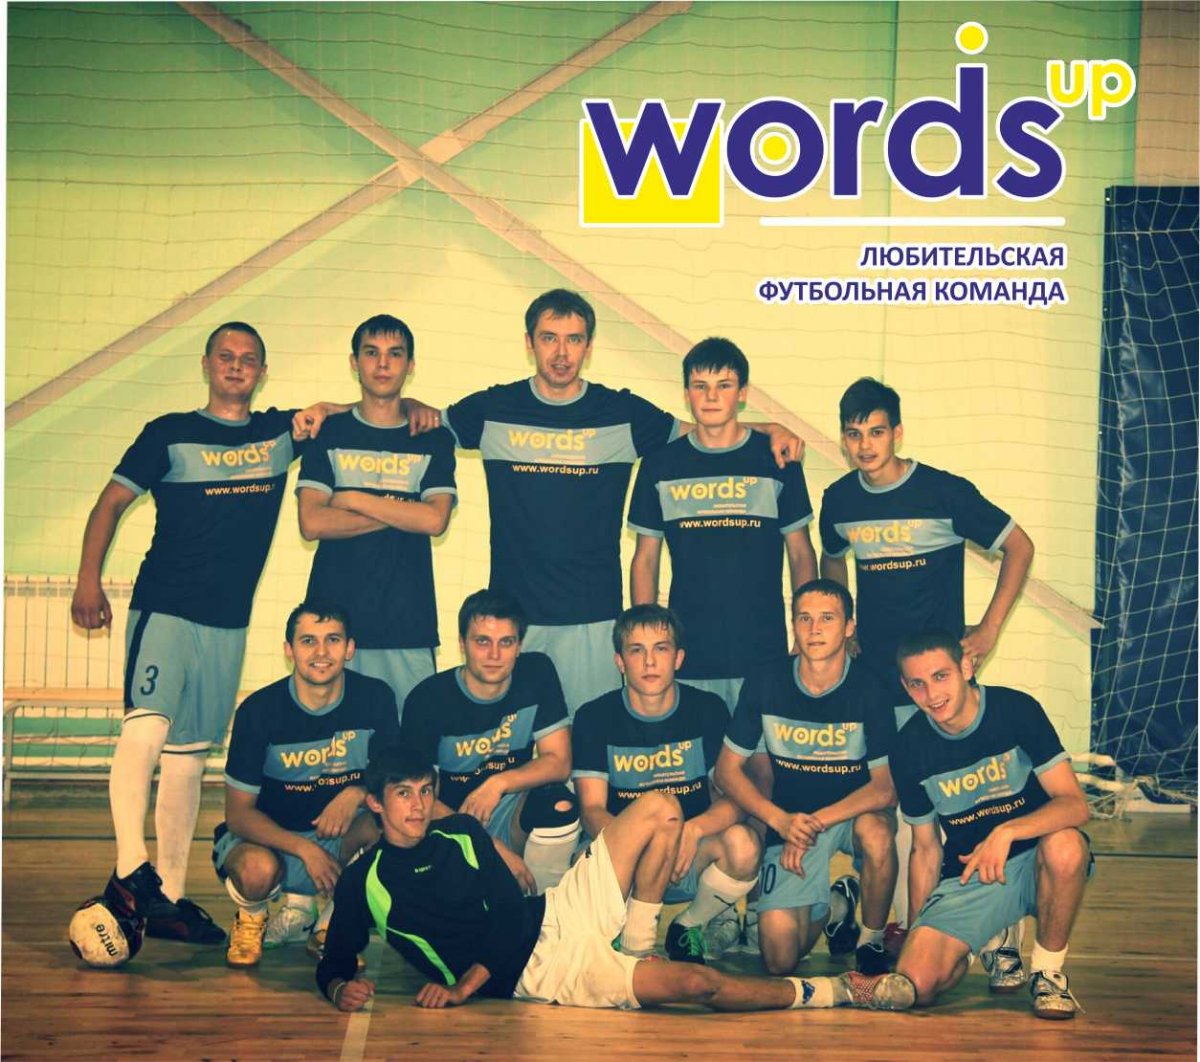 Российский стартап Wordsup одним из первых создал собственную футбольную команду